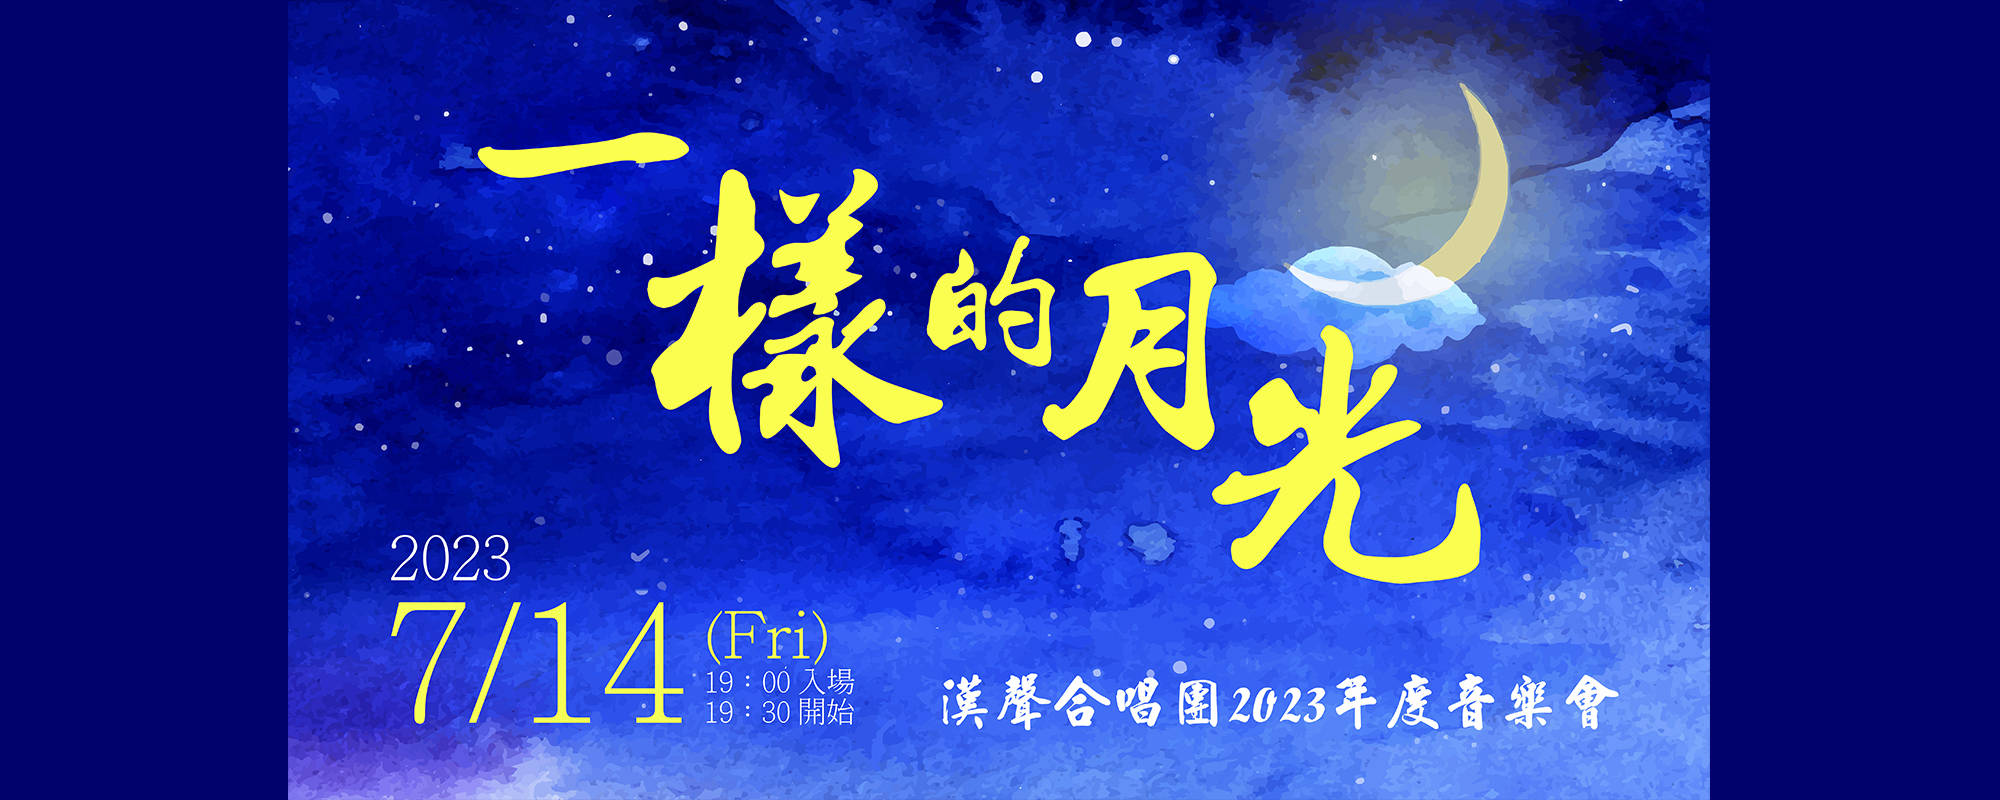 高雄市漢聲合唱團2023年度音樂會《一樣的月光》